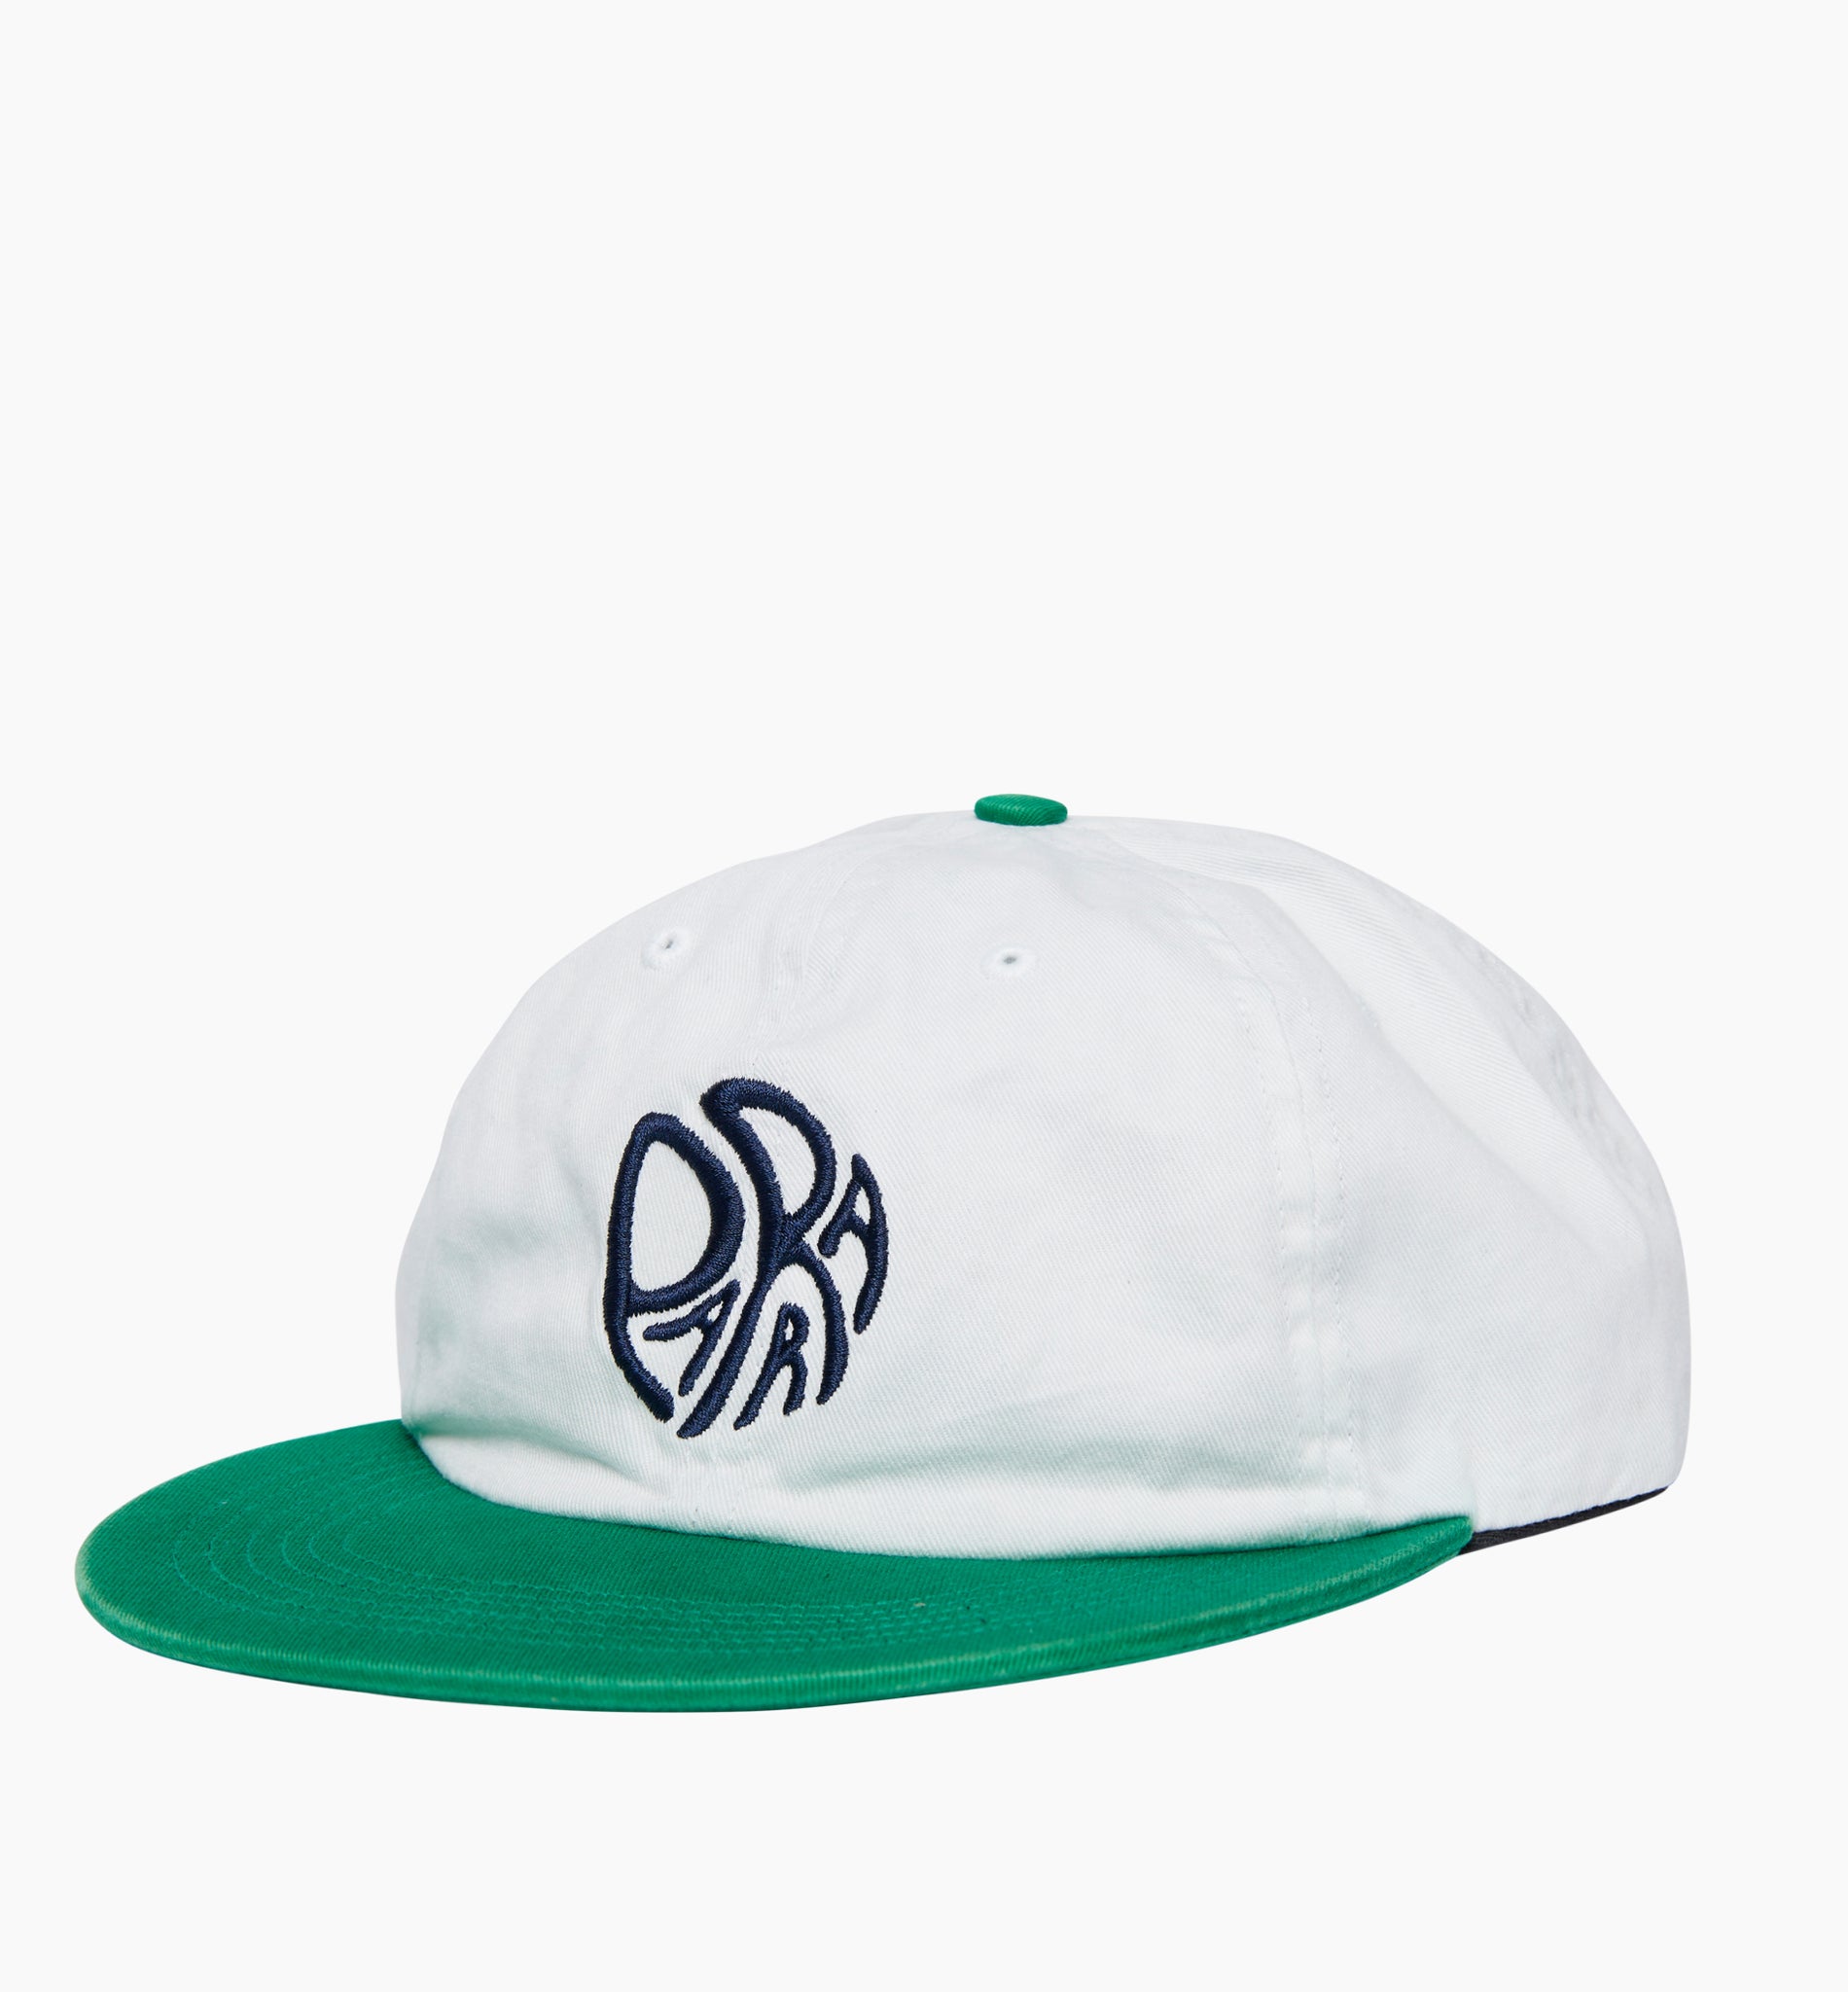 Circle Tweak Logo 6 Panel Hat - Off White/Green